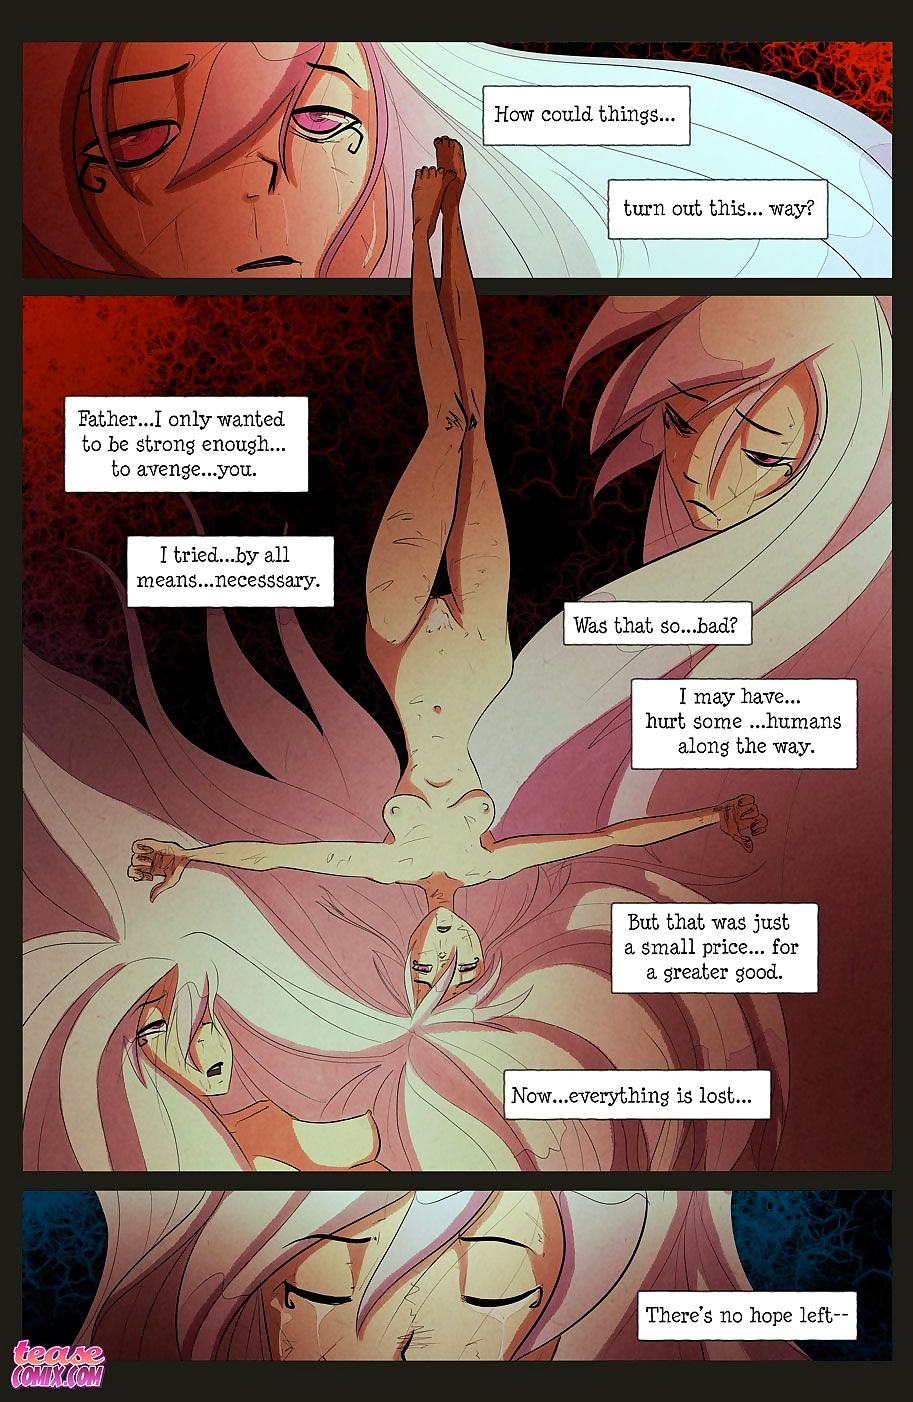 die Hexe Mit keine name - Teil 4 page 1